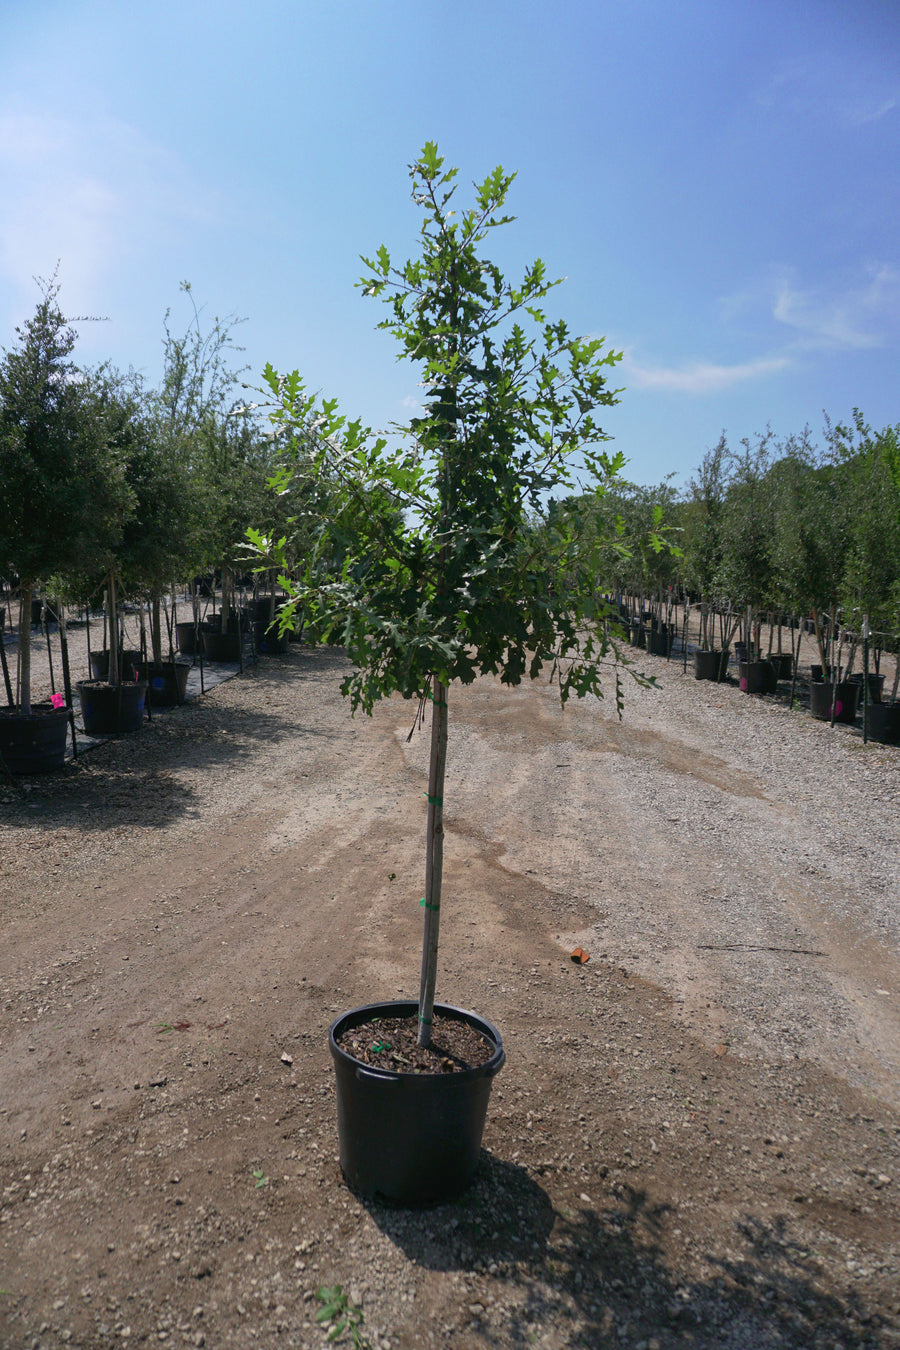 Bur Oak - Quercus Macrocarpa